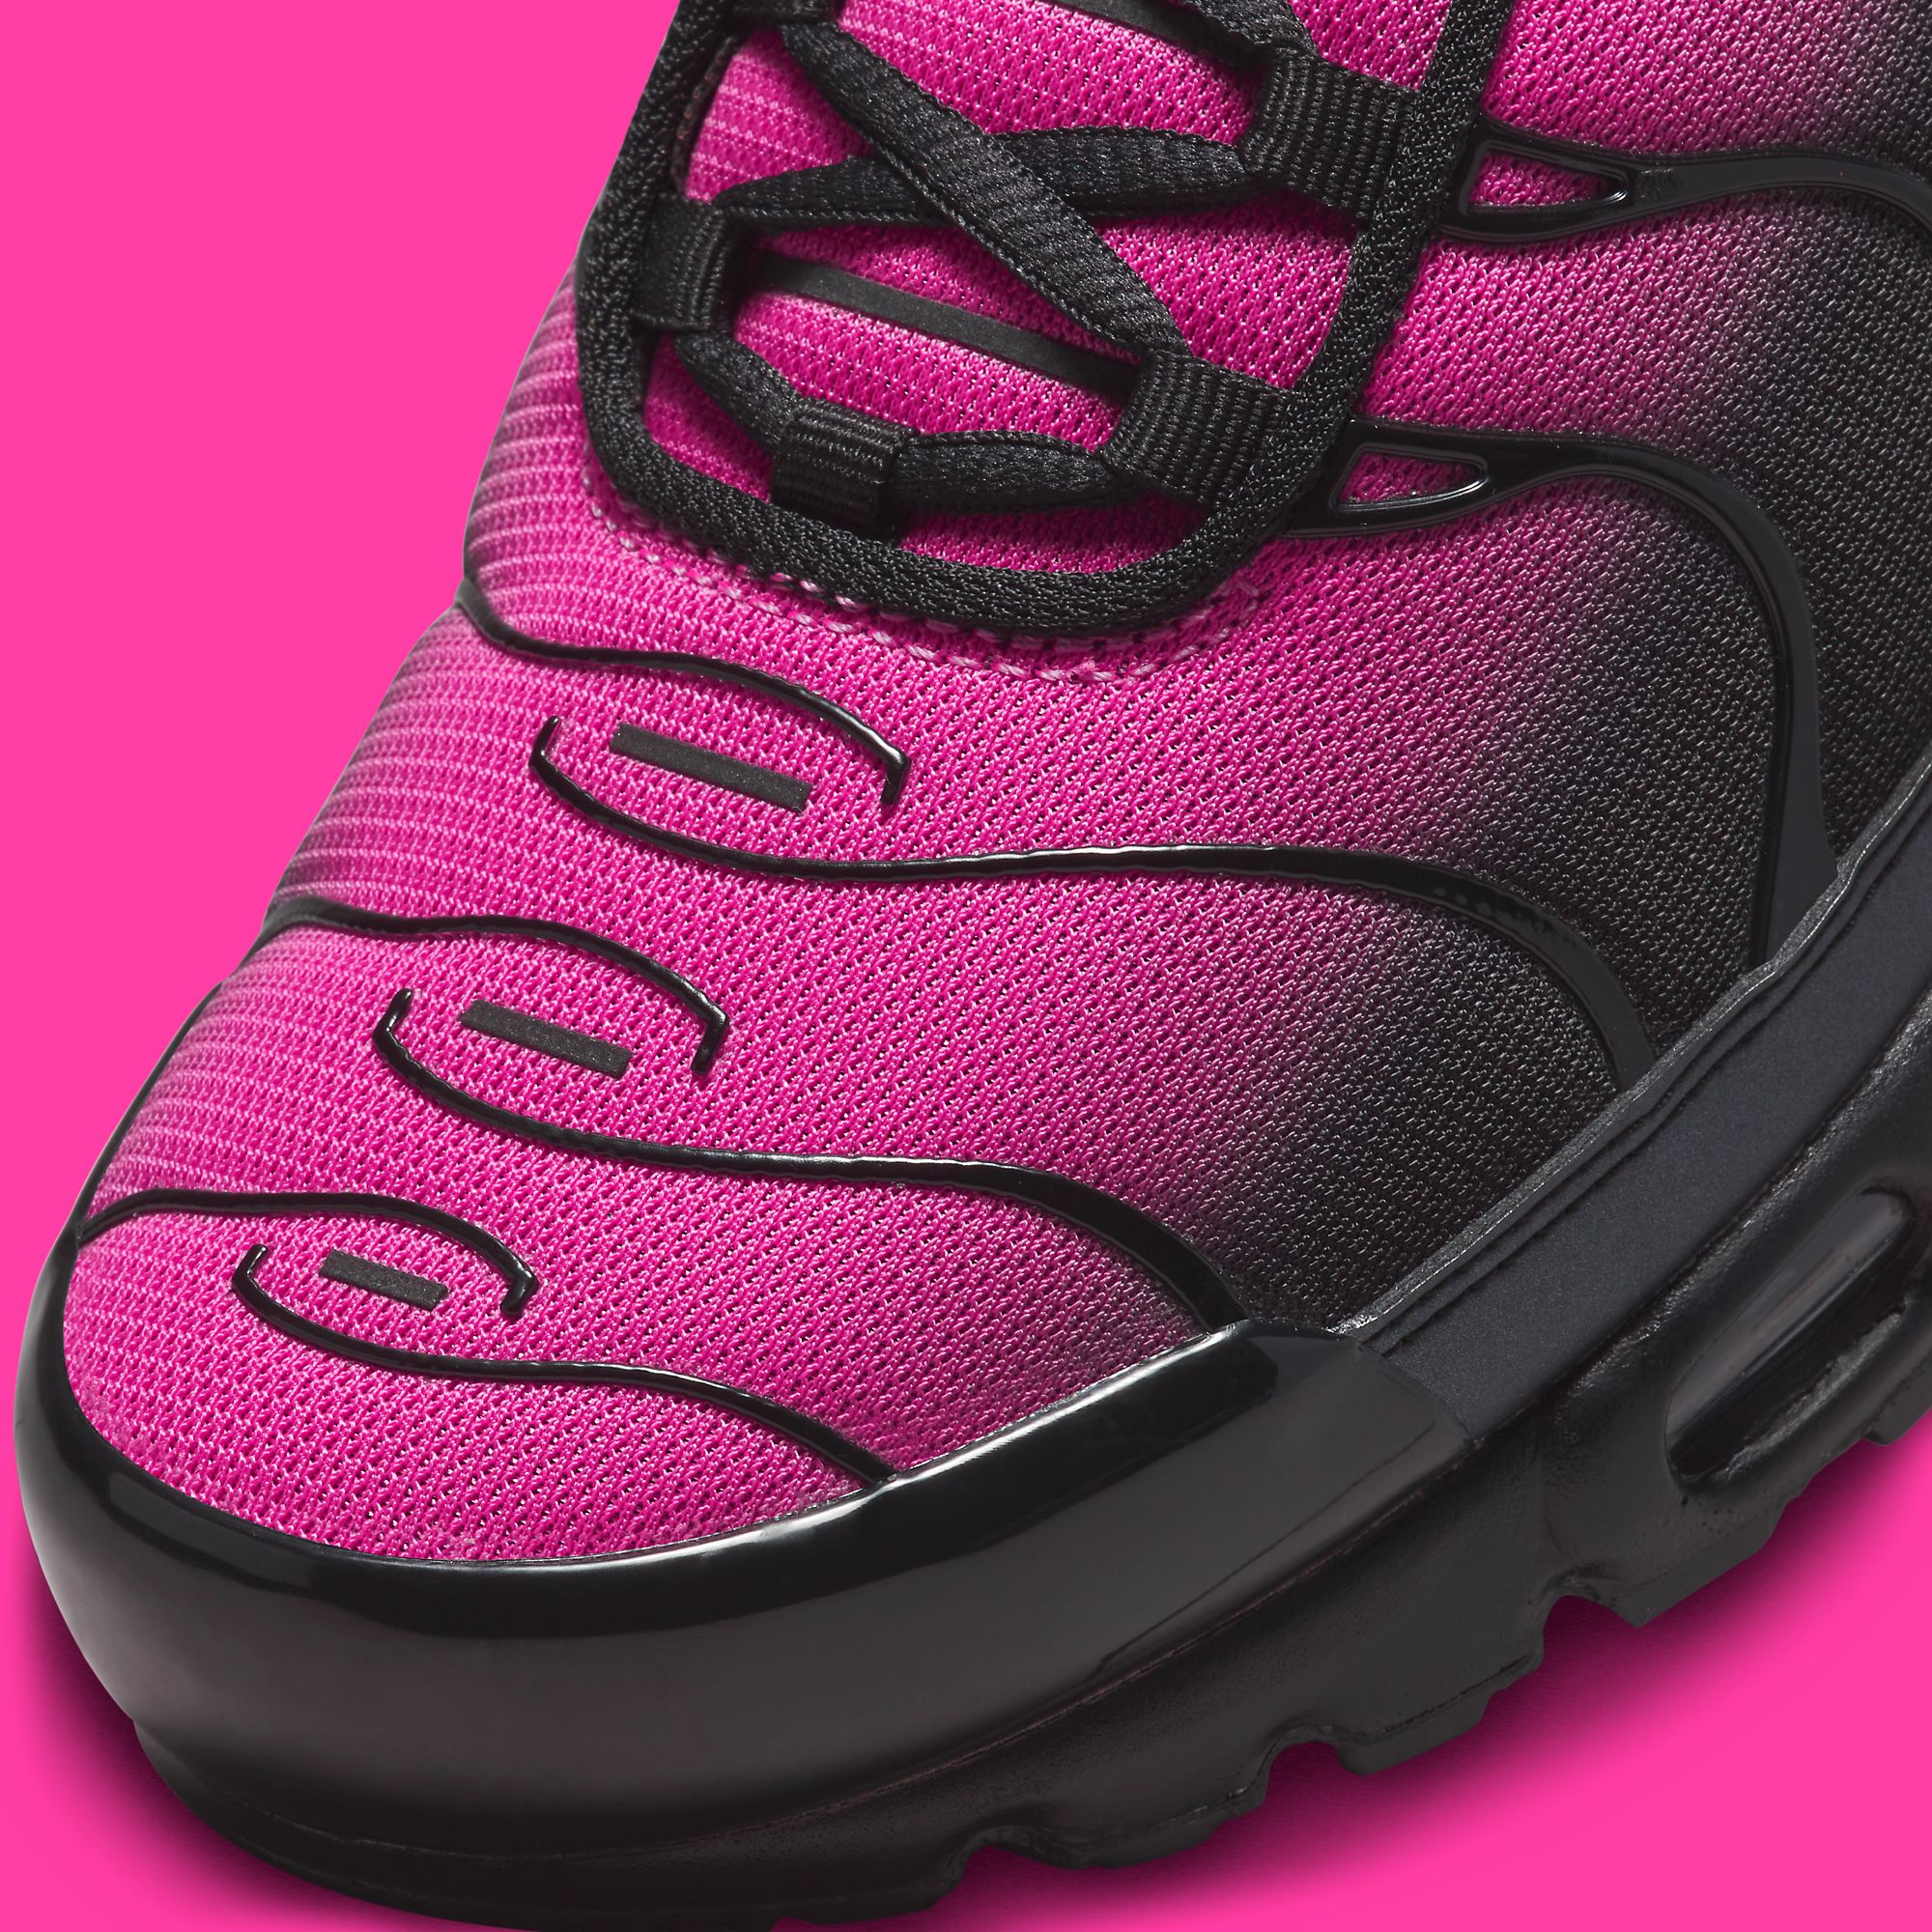 Ruwe slaap motief eindeloos This Gradient Nike Air Max Plus 'Black/Pink' Channels the 'Fire Berry' -  Sneaker Freaker